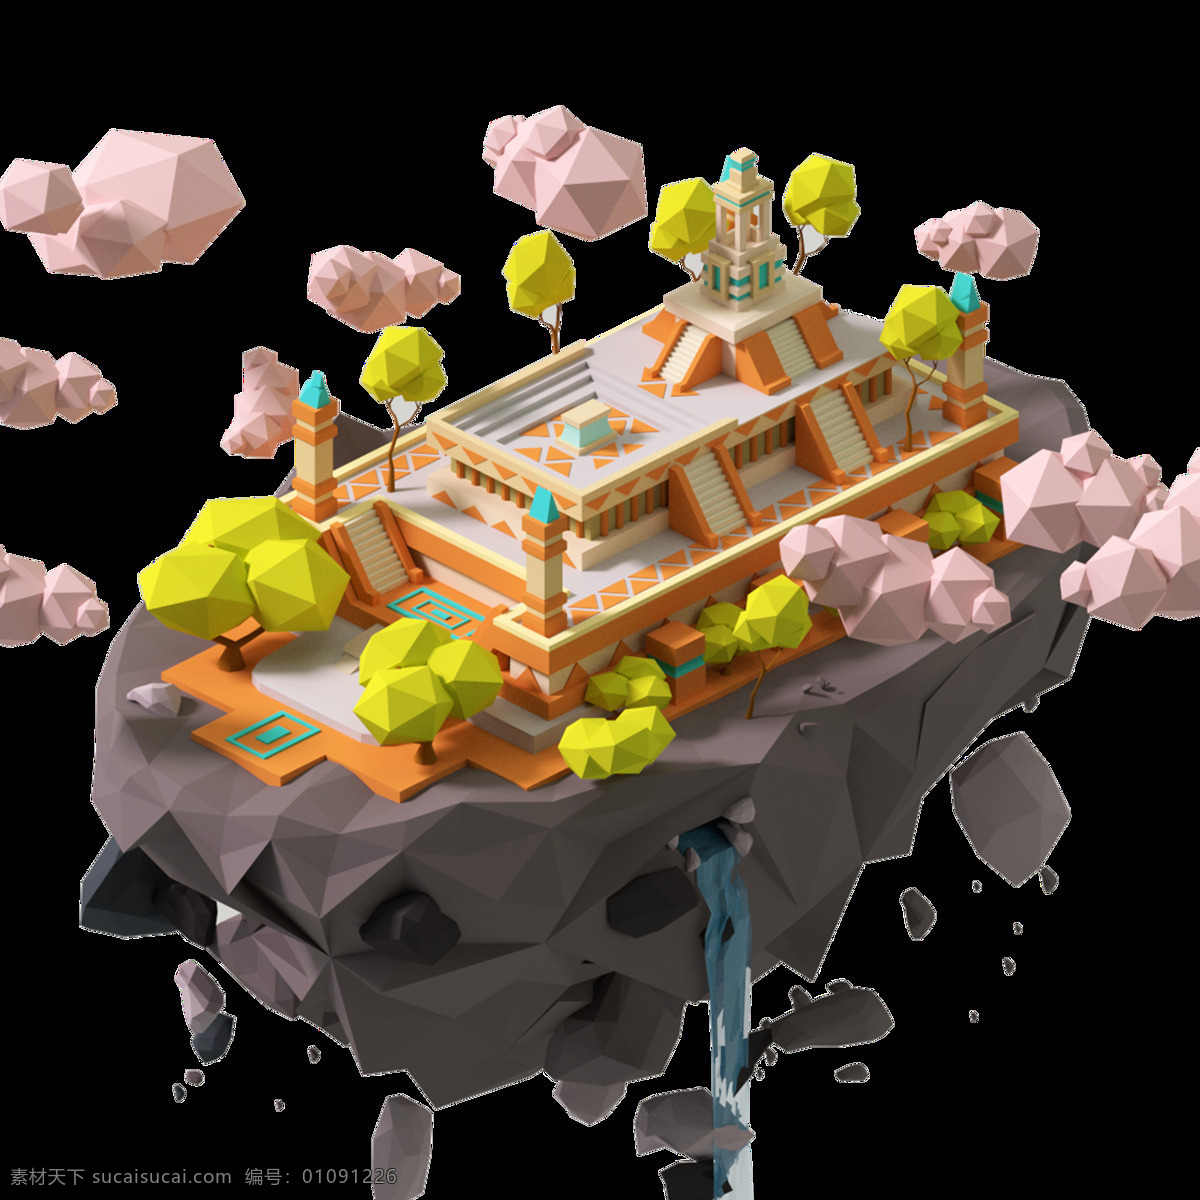 三维 游戏 城堡 建筑 设计图 房屋模型 房子png 立体房屋模型 游戏场景 游戏建筑